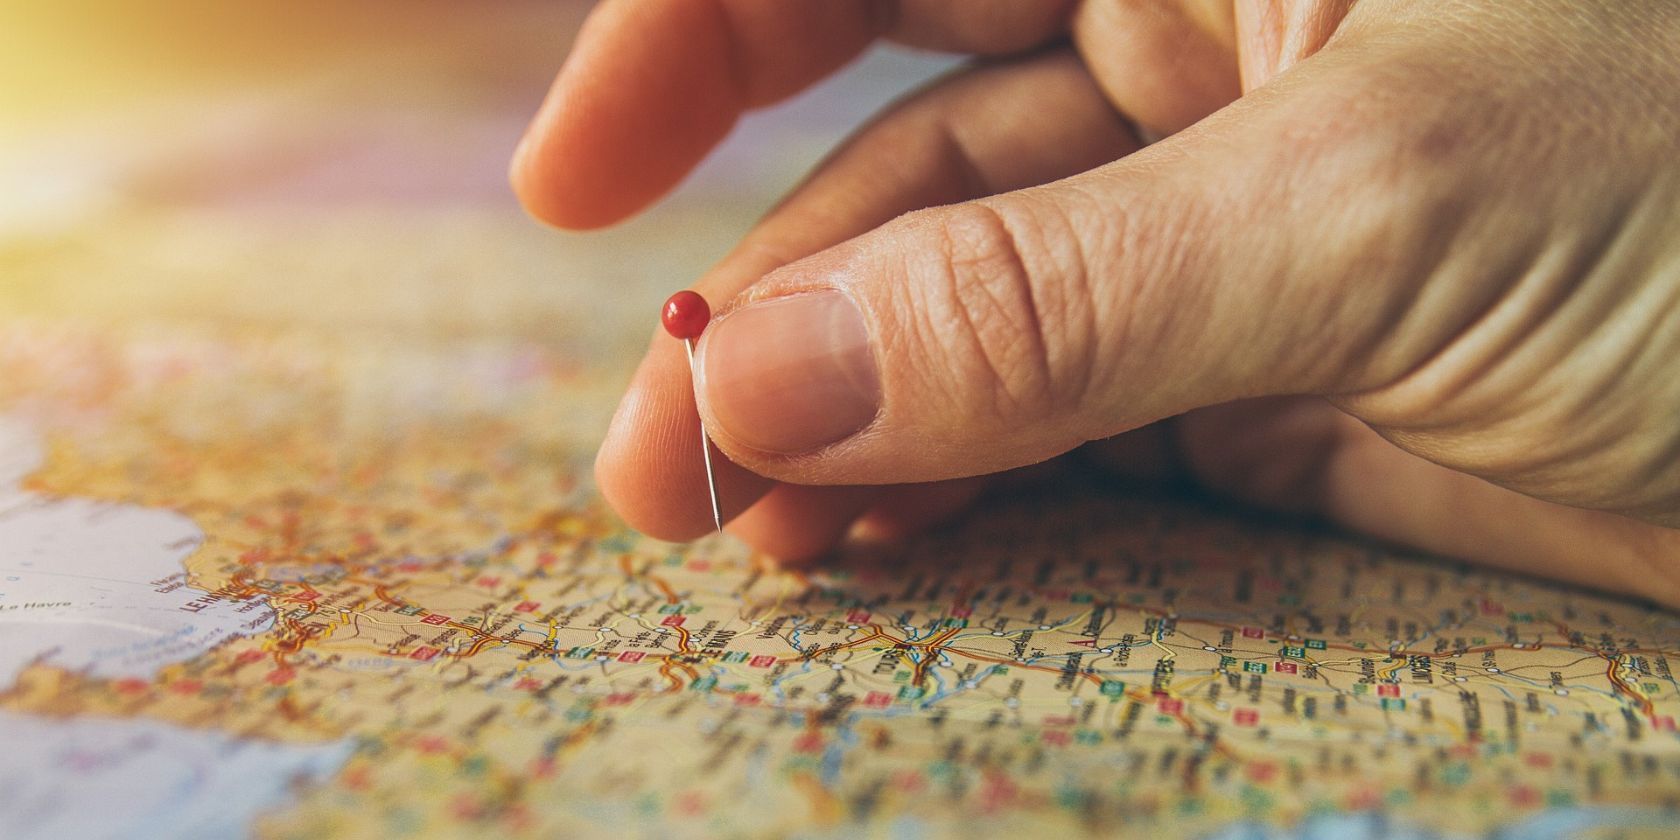 Gros plan d'une main plaçant une épingle rouge sur la surface d'une carte du monde.